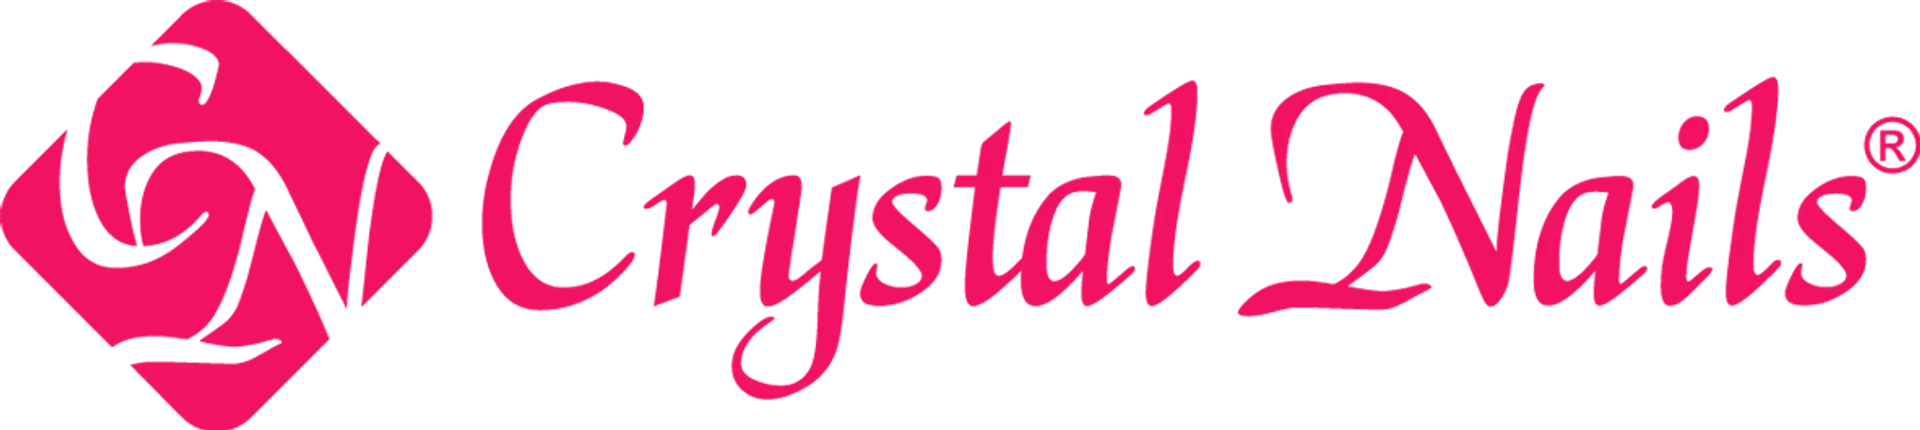 CRYSTAL NAILS logo